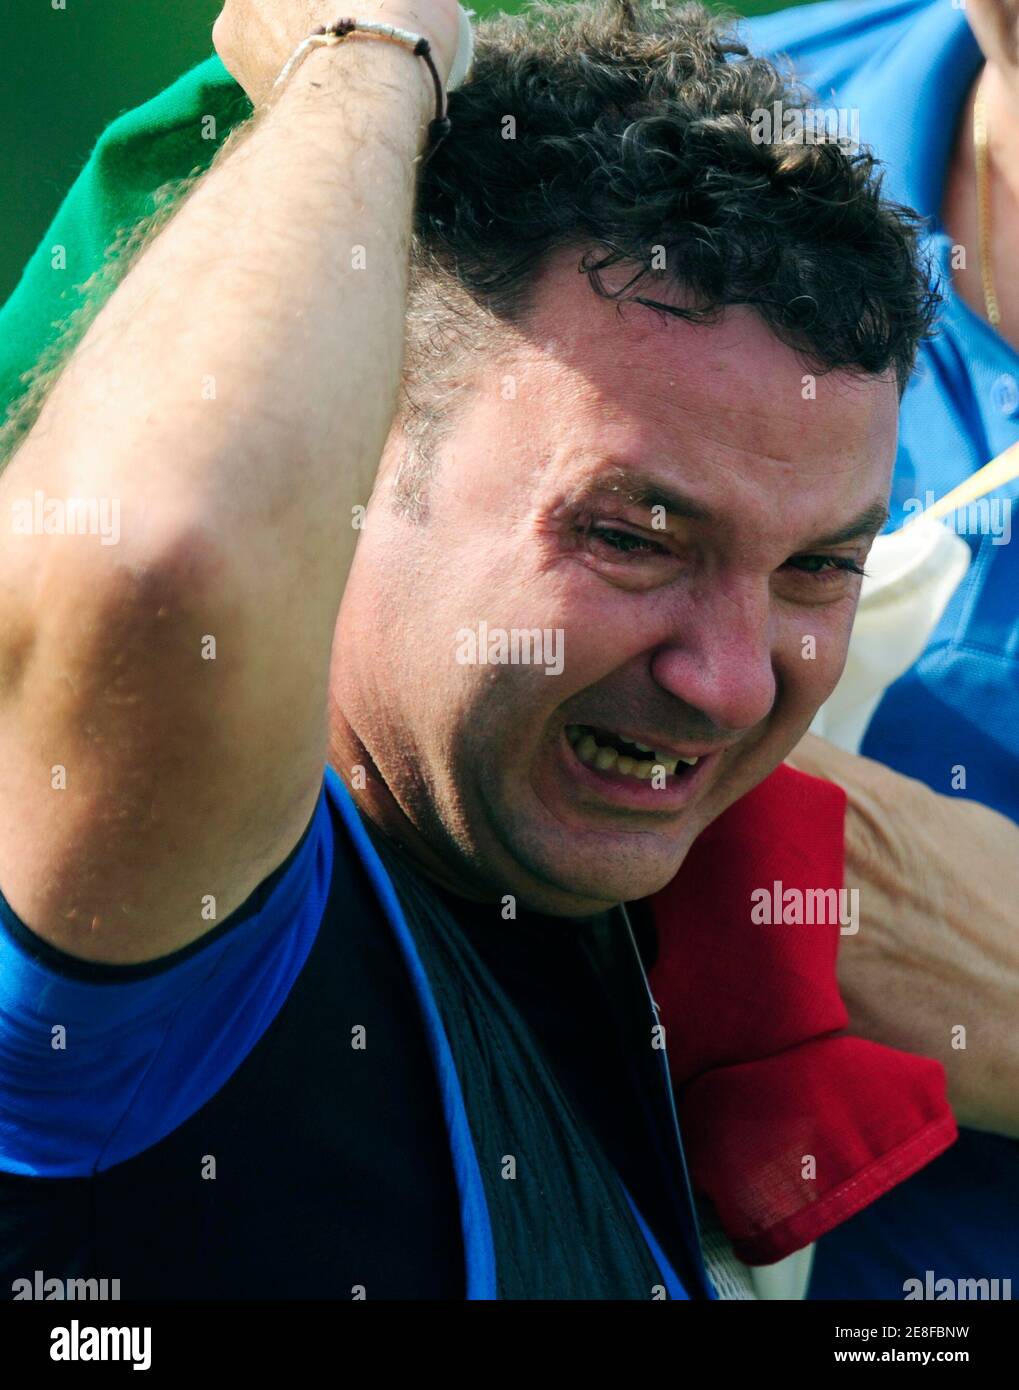 Francesco D'Aniello Italiens feiert die Silbermedaille bei den Herren Doppeltrap schießen Wettbewerb auf der Beijing 2008 Olympischen Spiele August 12, 2008.     REUTERS/Desmond Boylan (CHINA) Stockfoto